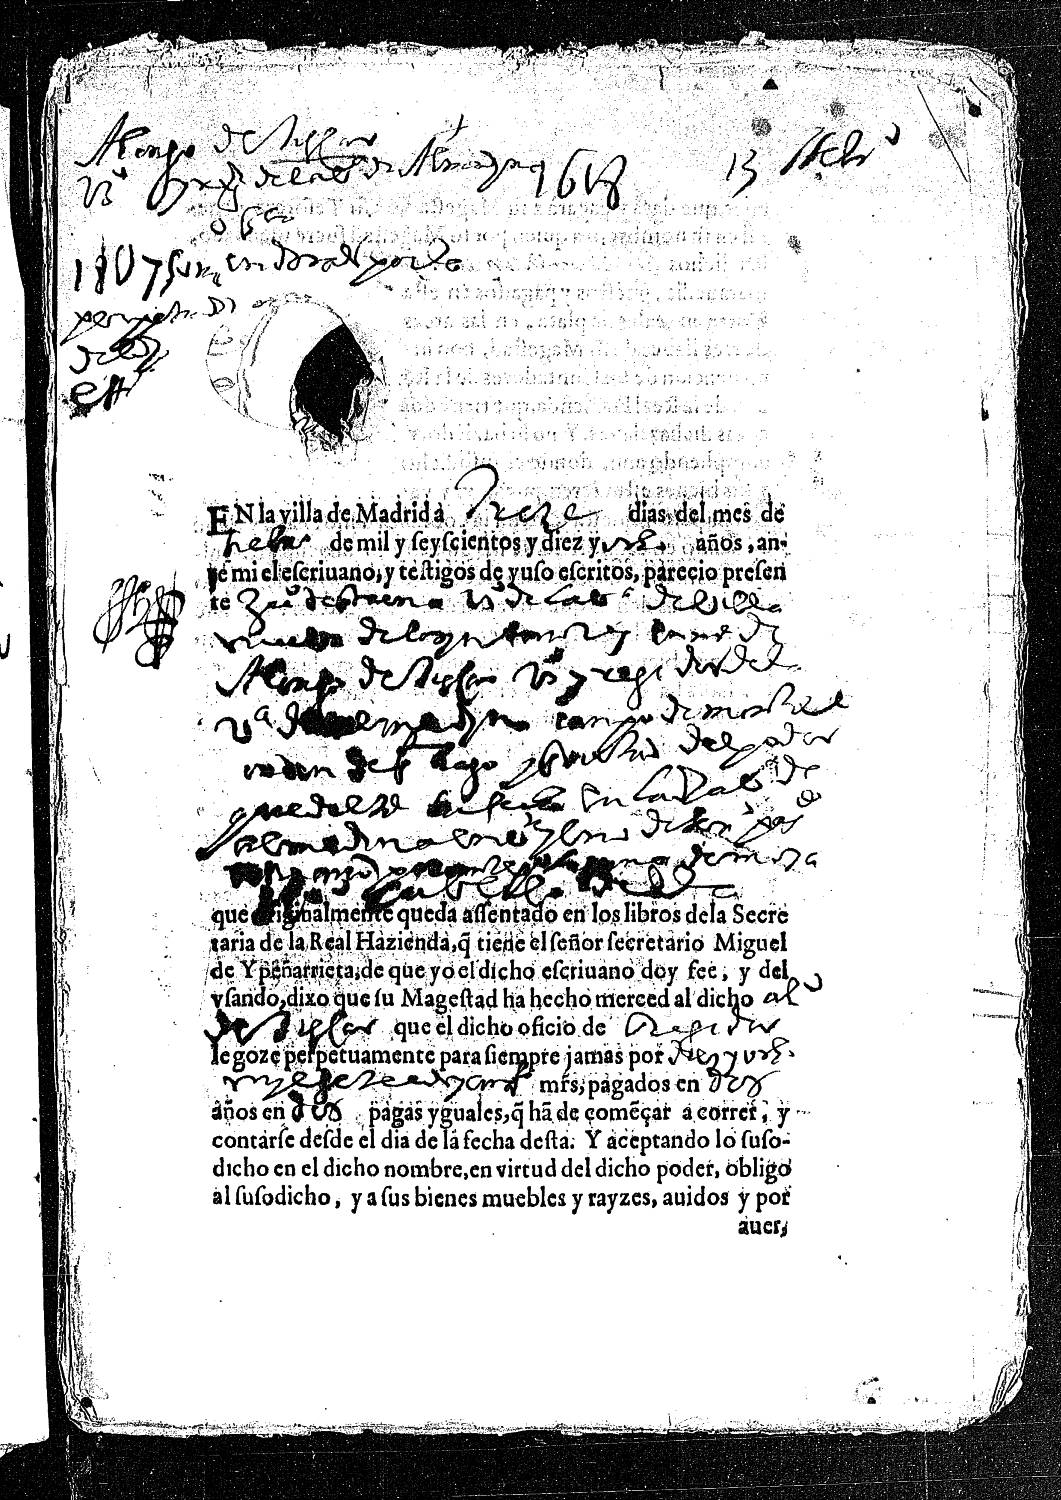 Acta notarial dando fe de la obligación de Juan de Entrena, en nombre de Alonso de Tiscar, vecino de Almedina, para pagar 18.750 maravedís por la perpetuación de su oficio de regidor de esta villa.